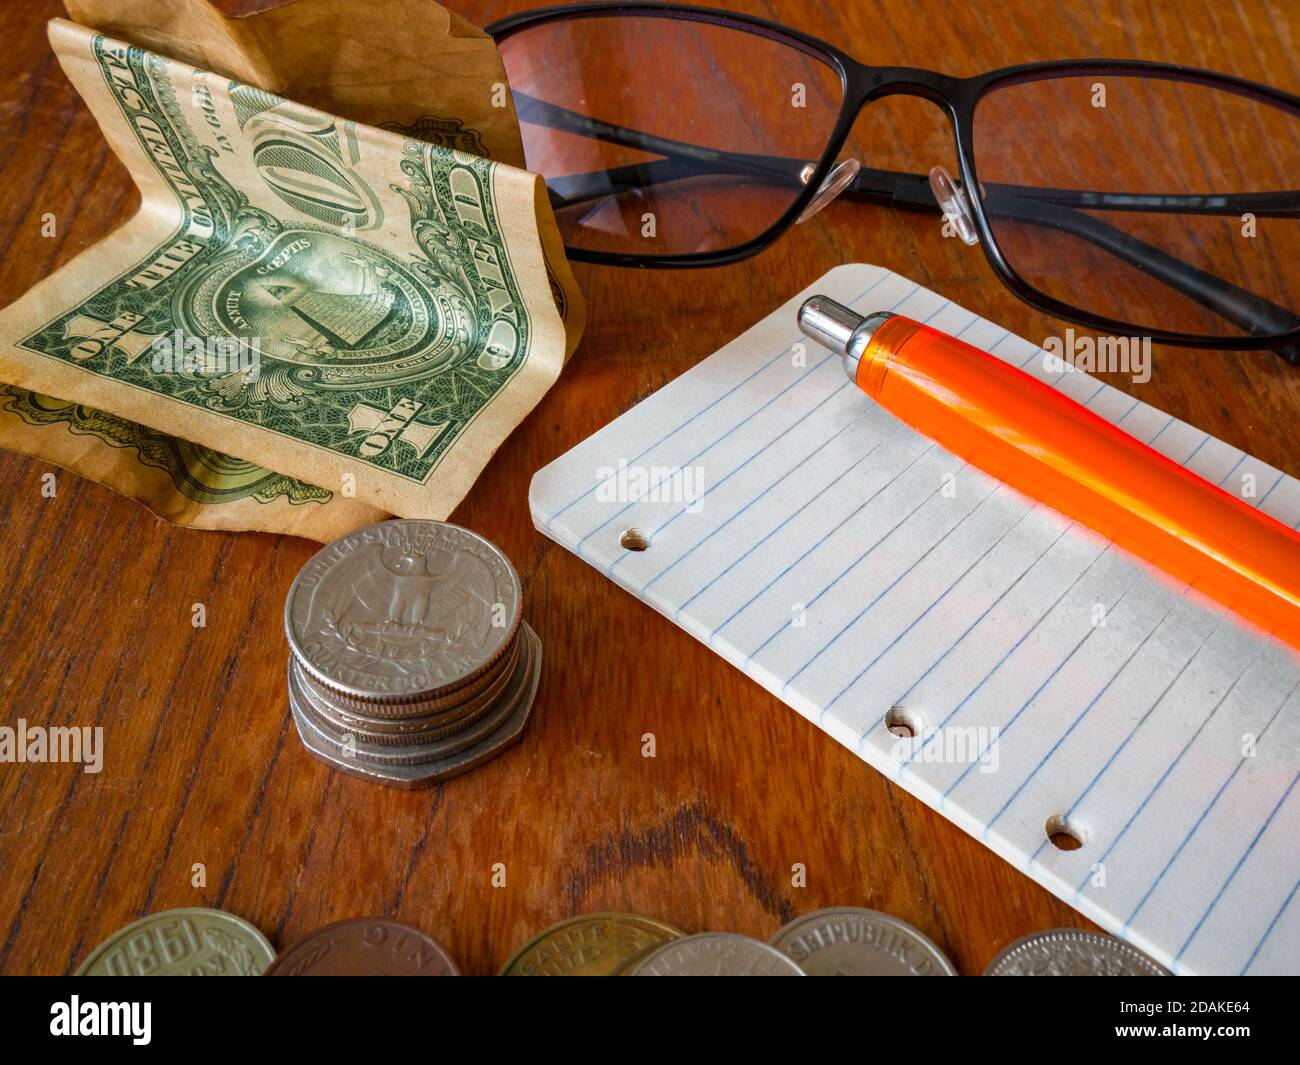 Plié un billet de banque en dollars US, pile de pièces (un quart de dollar US sur le dessus), un bloc-notes avec un stylo, des lunettes et une pile de pièces au premier plan. Banque D'Images